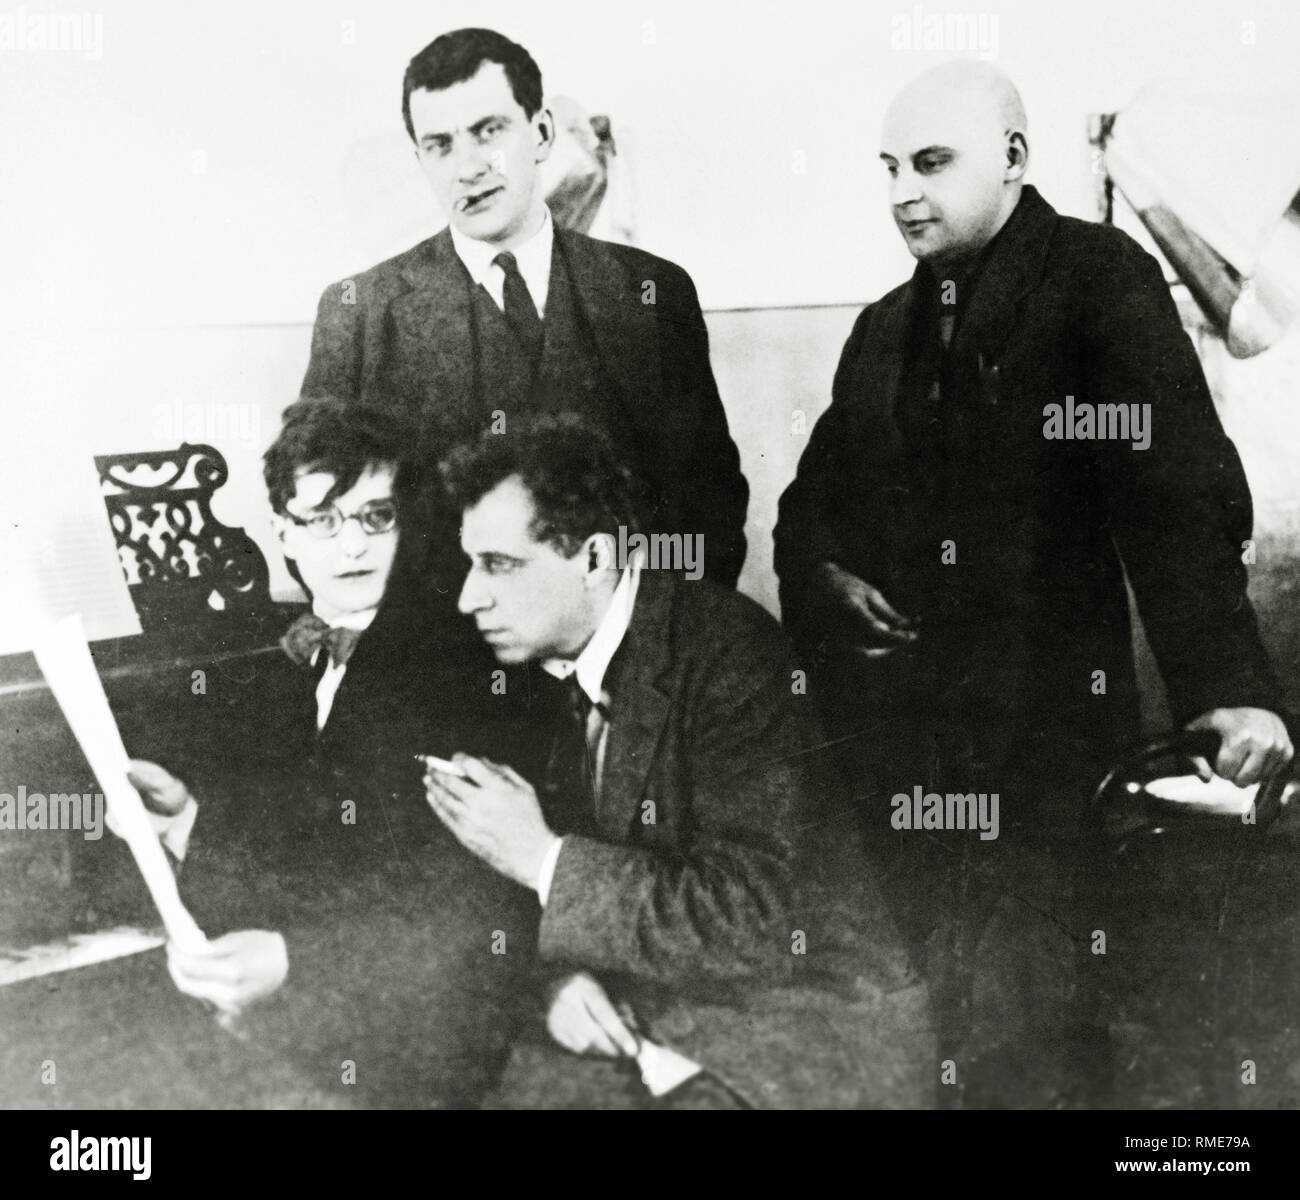 Dmitri Shostakovich, Vladimir Mayakovsky, Vsevolod Meyerhold and Alexander Rodchenko. Photograph Stock Photo